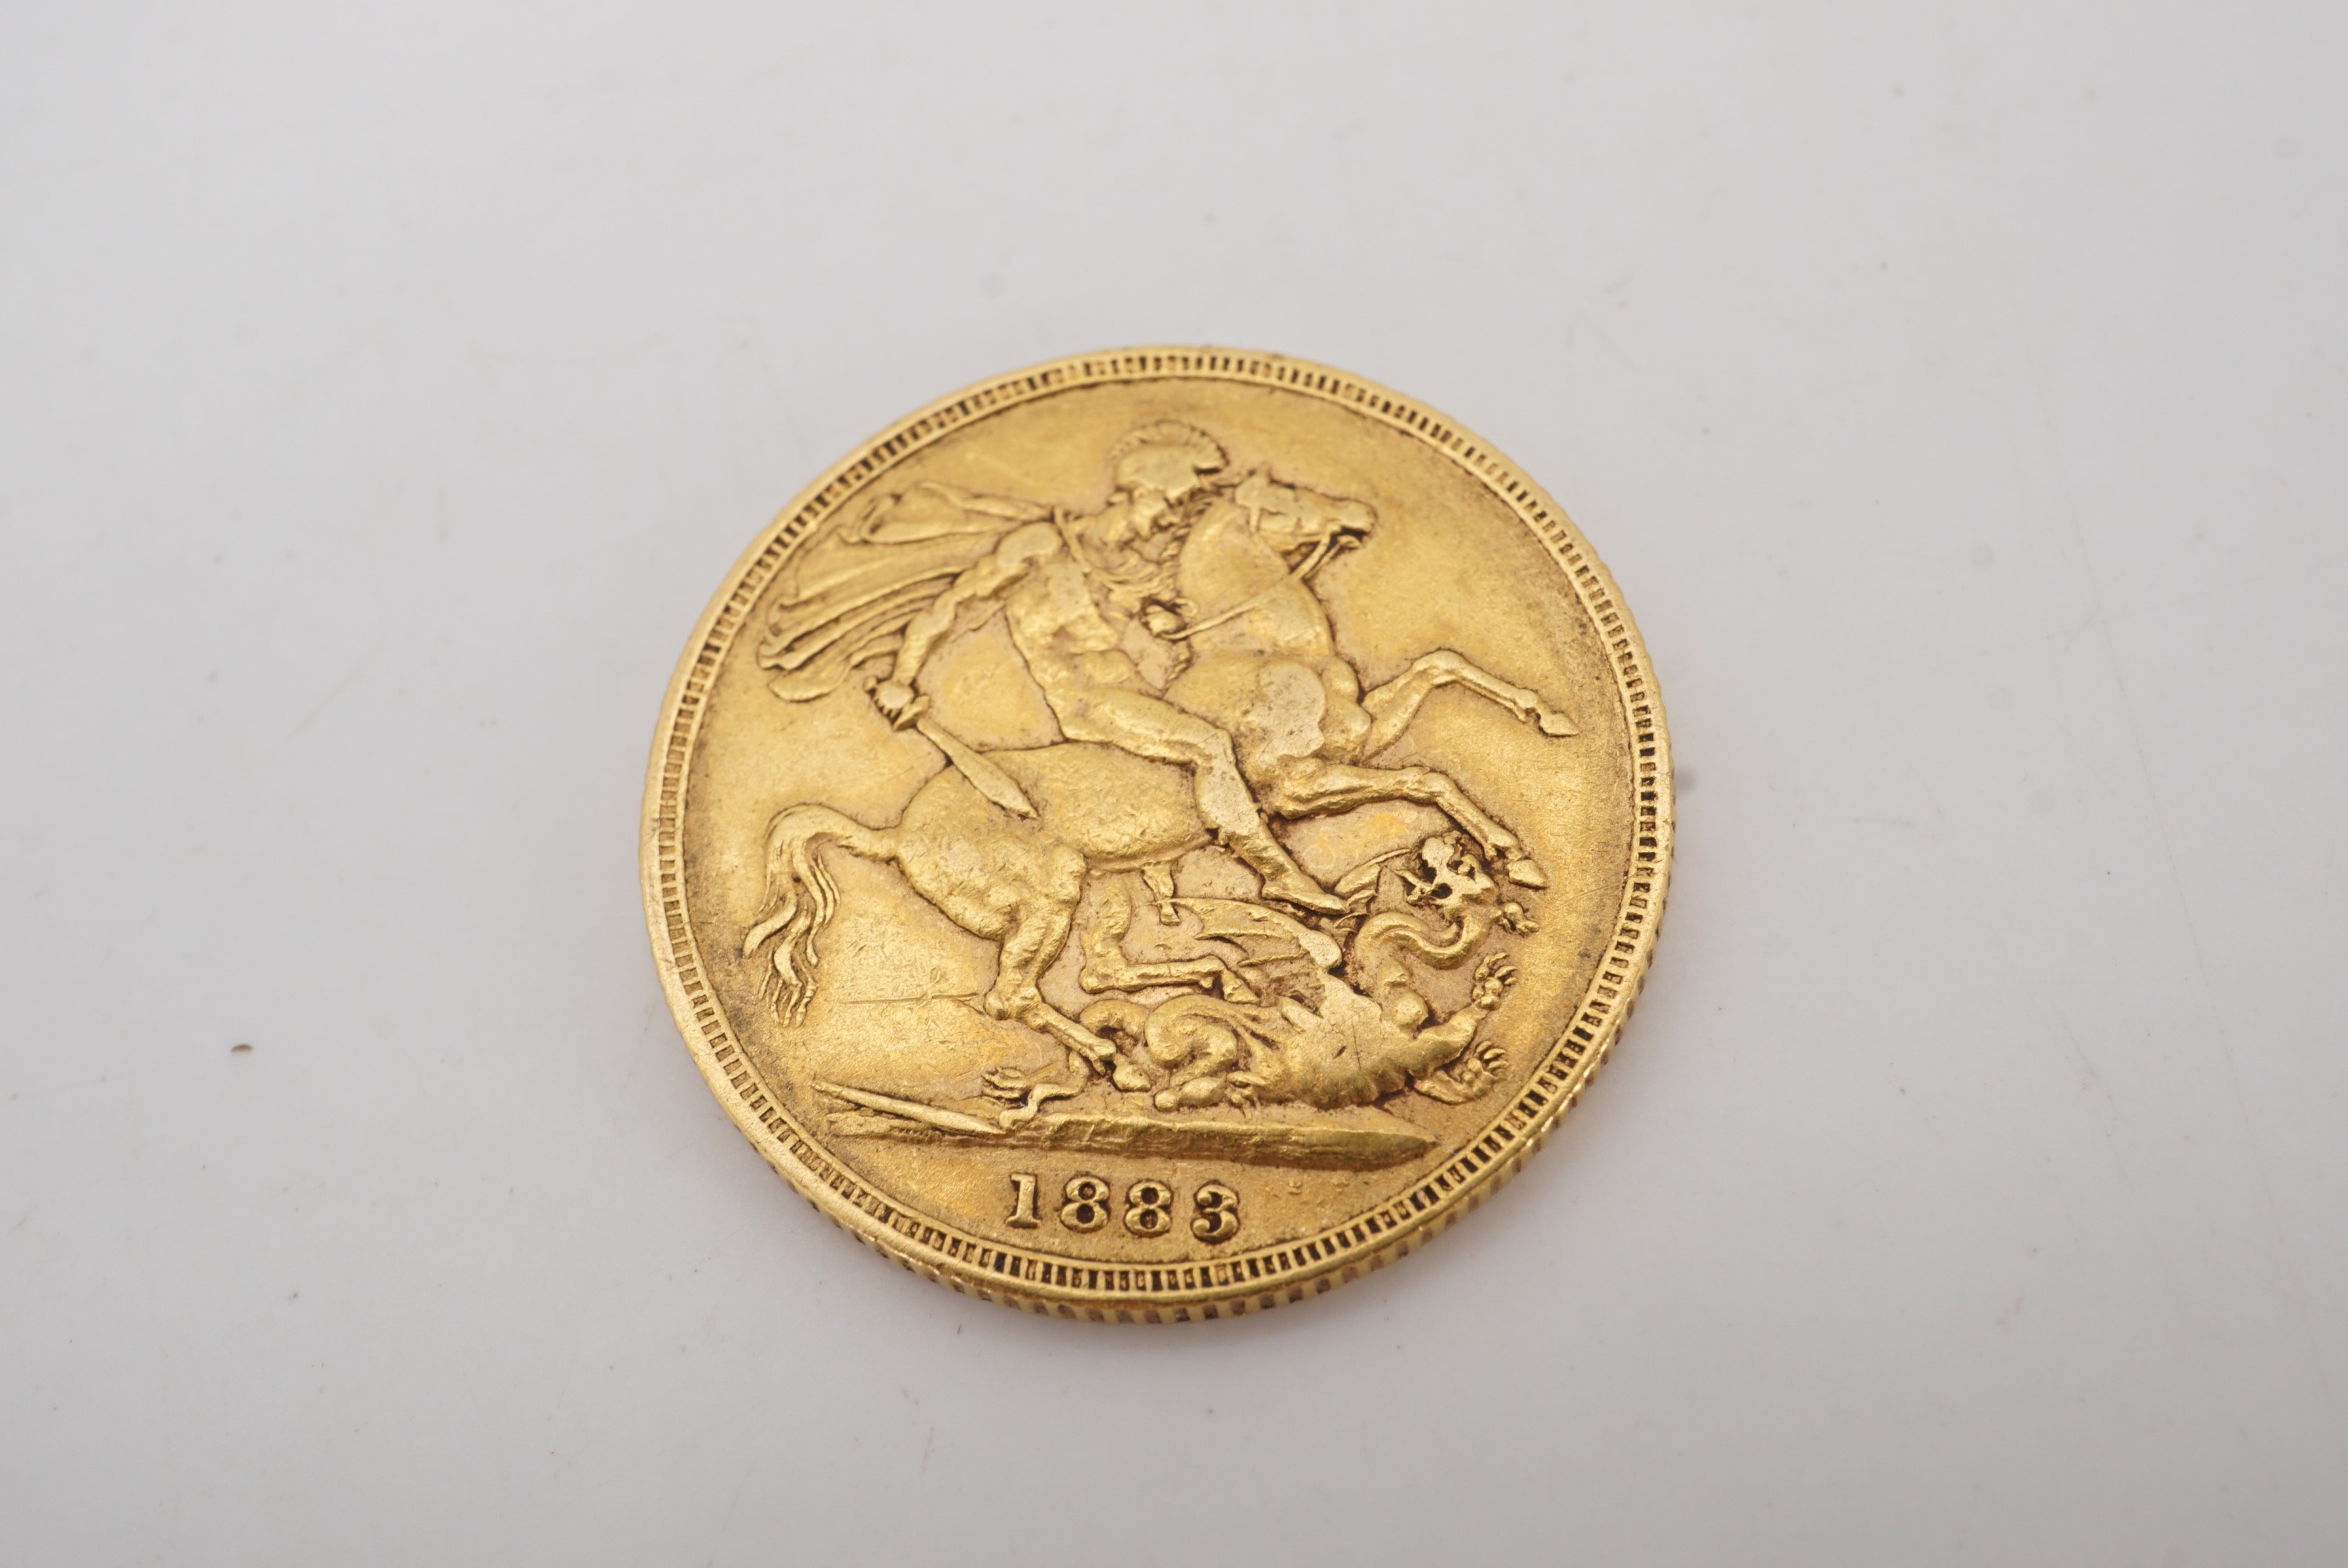 An 1883 gold Sovereign